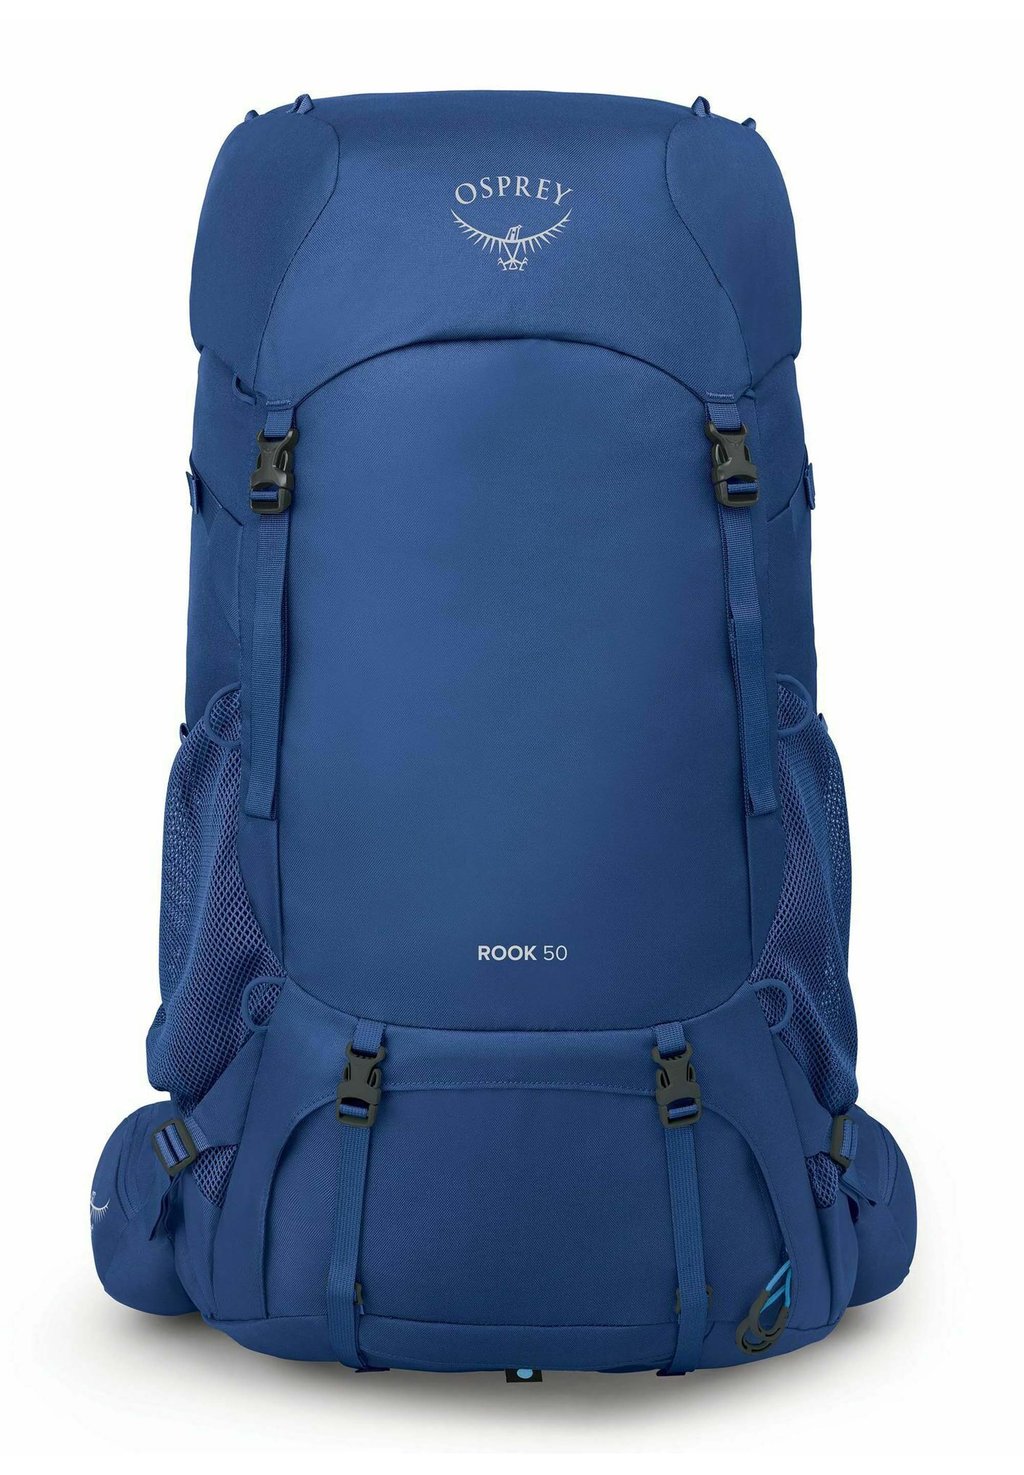 Треккинговый рюкзак ROOK Osprey, цвет astology blue blue flame хоста blue flame m